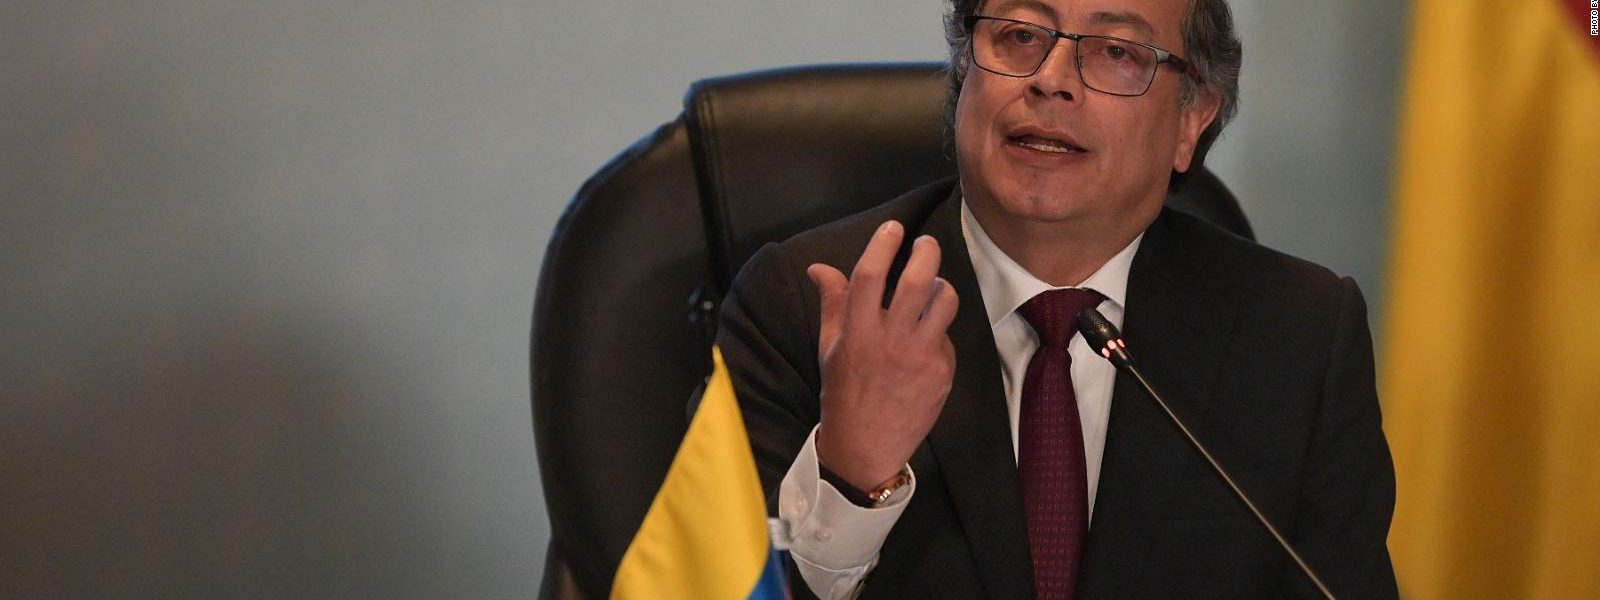 Los temas clave de la conferencia sobre Venezuela en Colombia